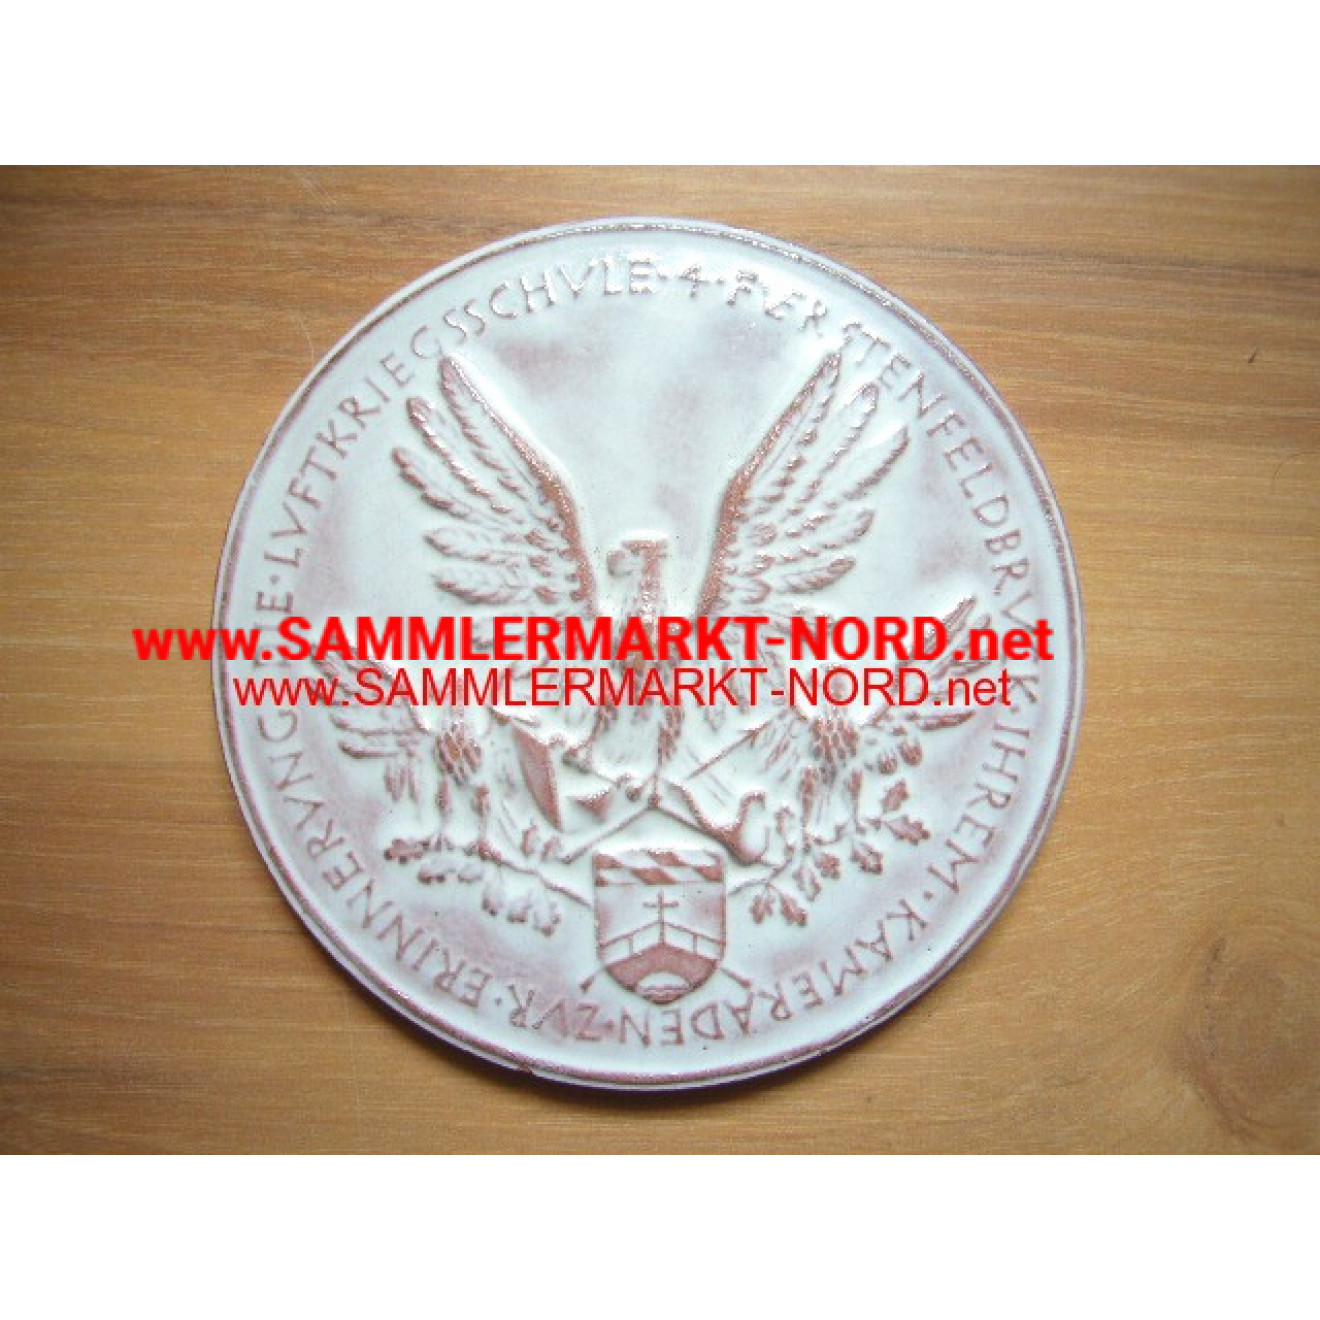 Air Force - memory medal of the air war school 4 (Fürstenfeldbru